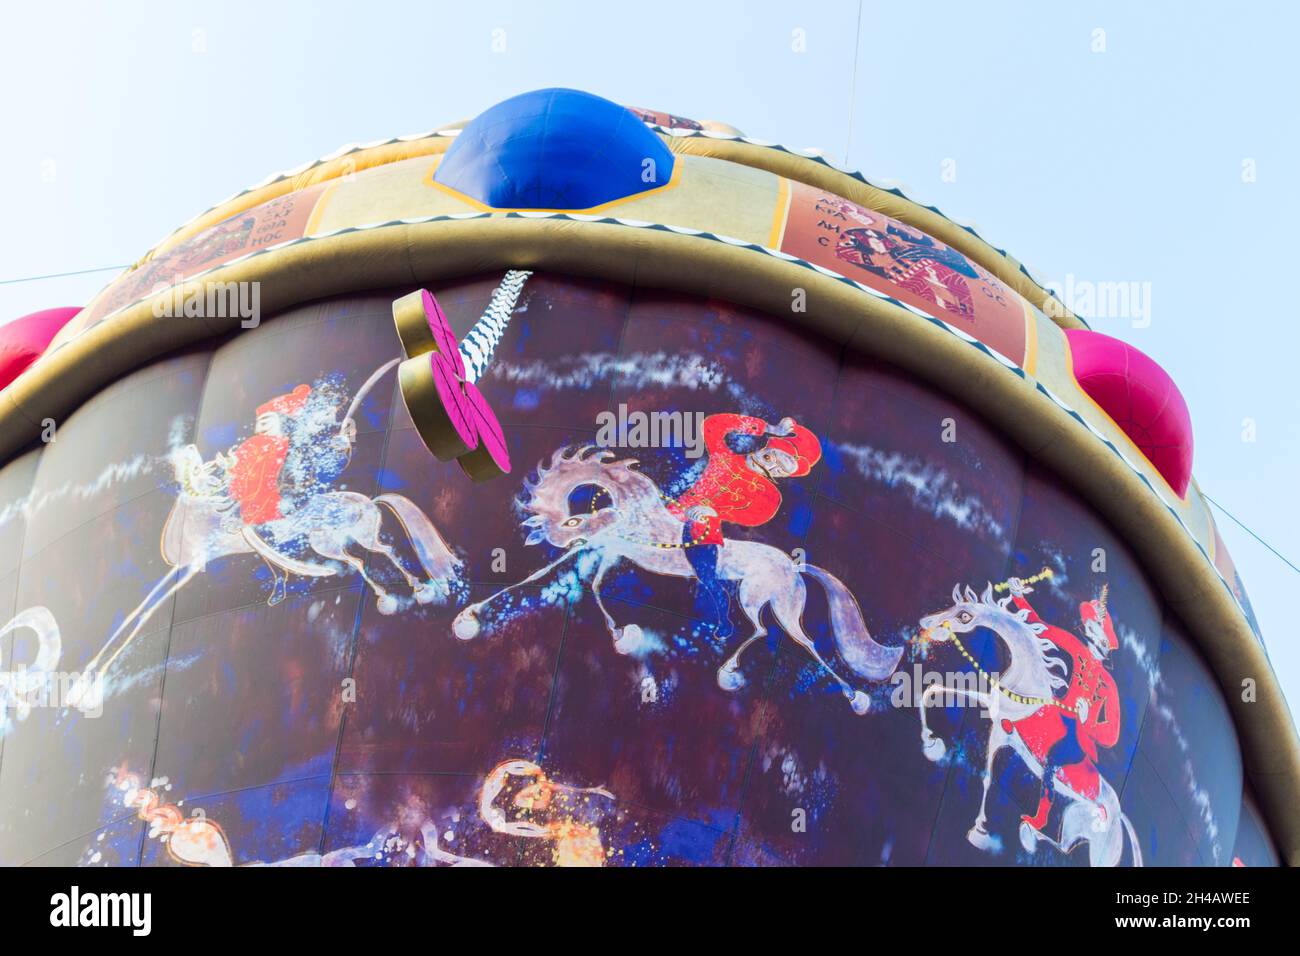 Nahaufnahme des Heißluftballons mit ungarischen Symbolen: Die heilige Krone und Husaren, während der Kult100 Veranstaltung, Sopron, Ungarn Stockfoto